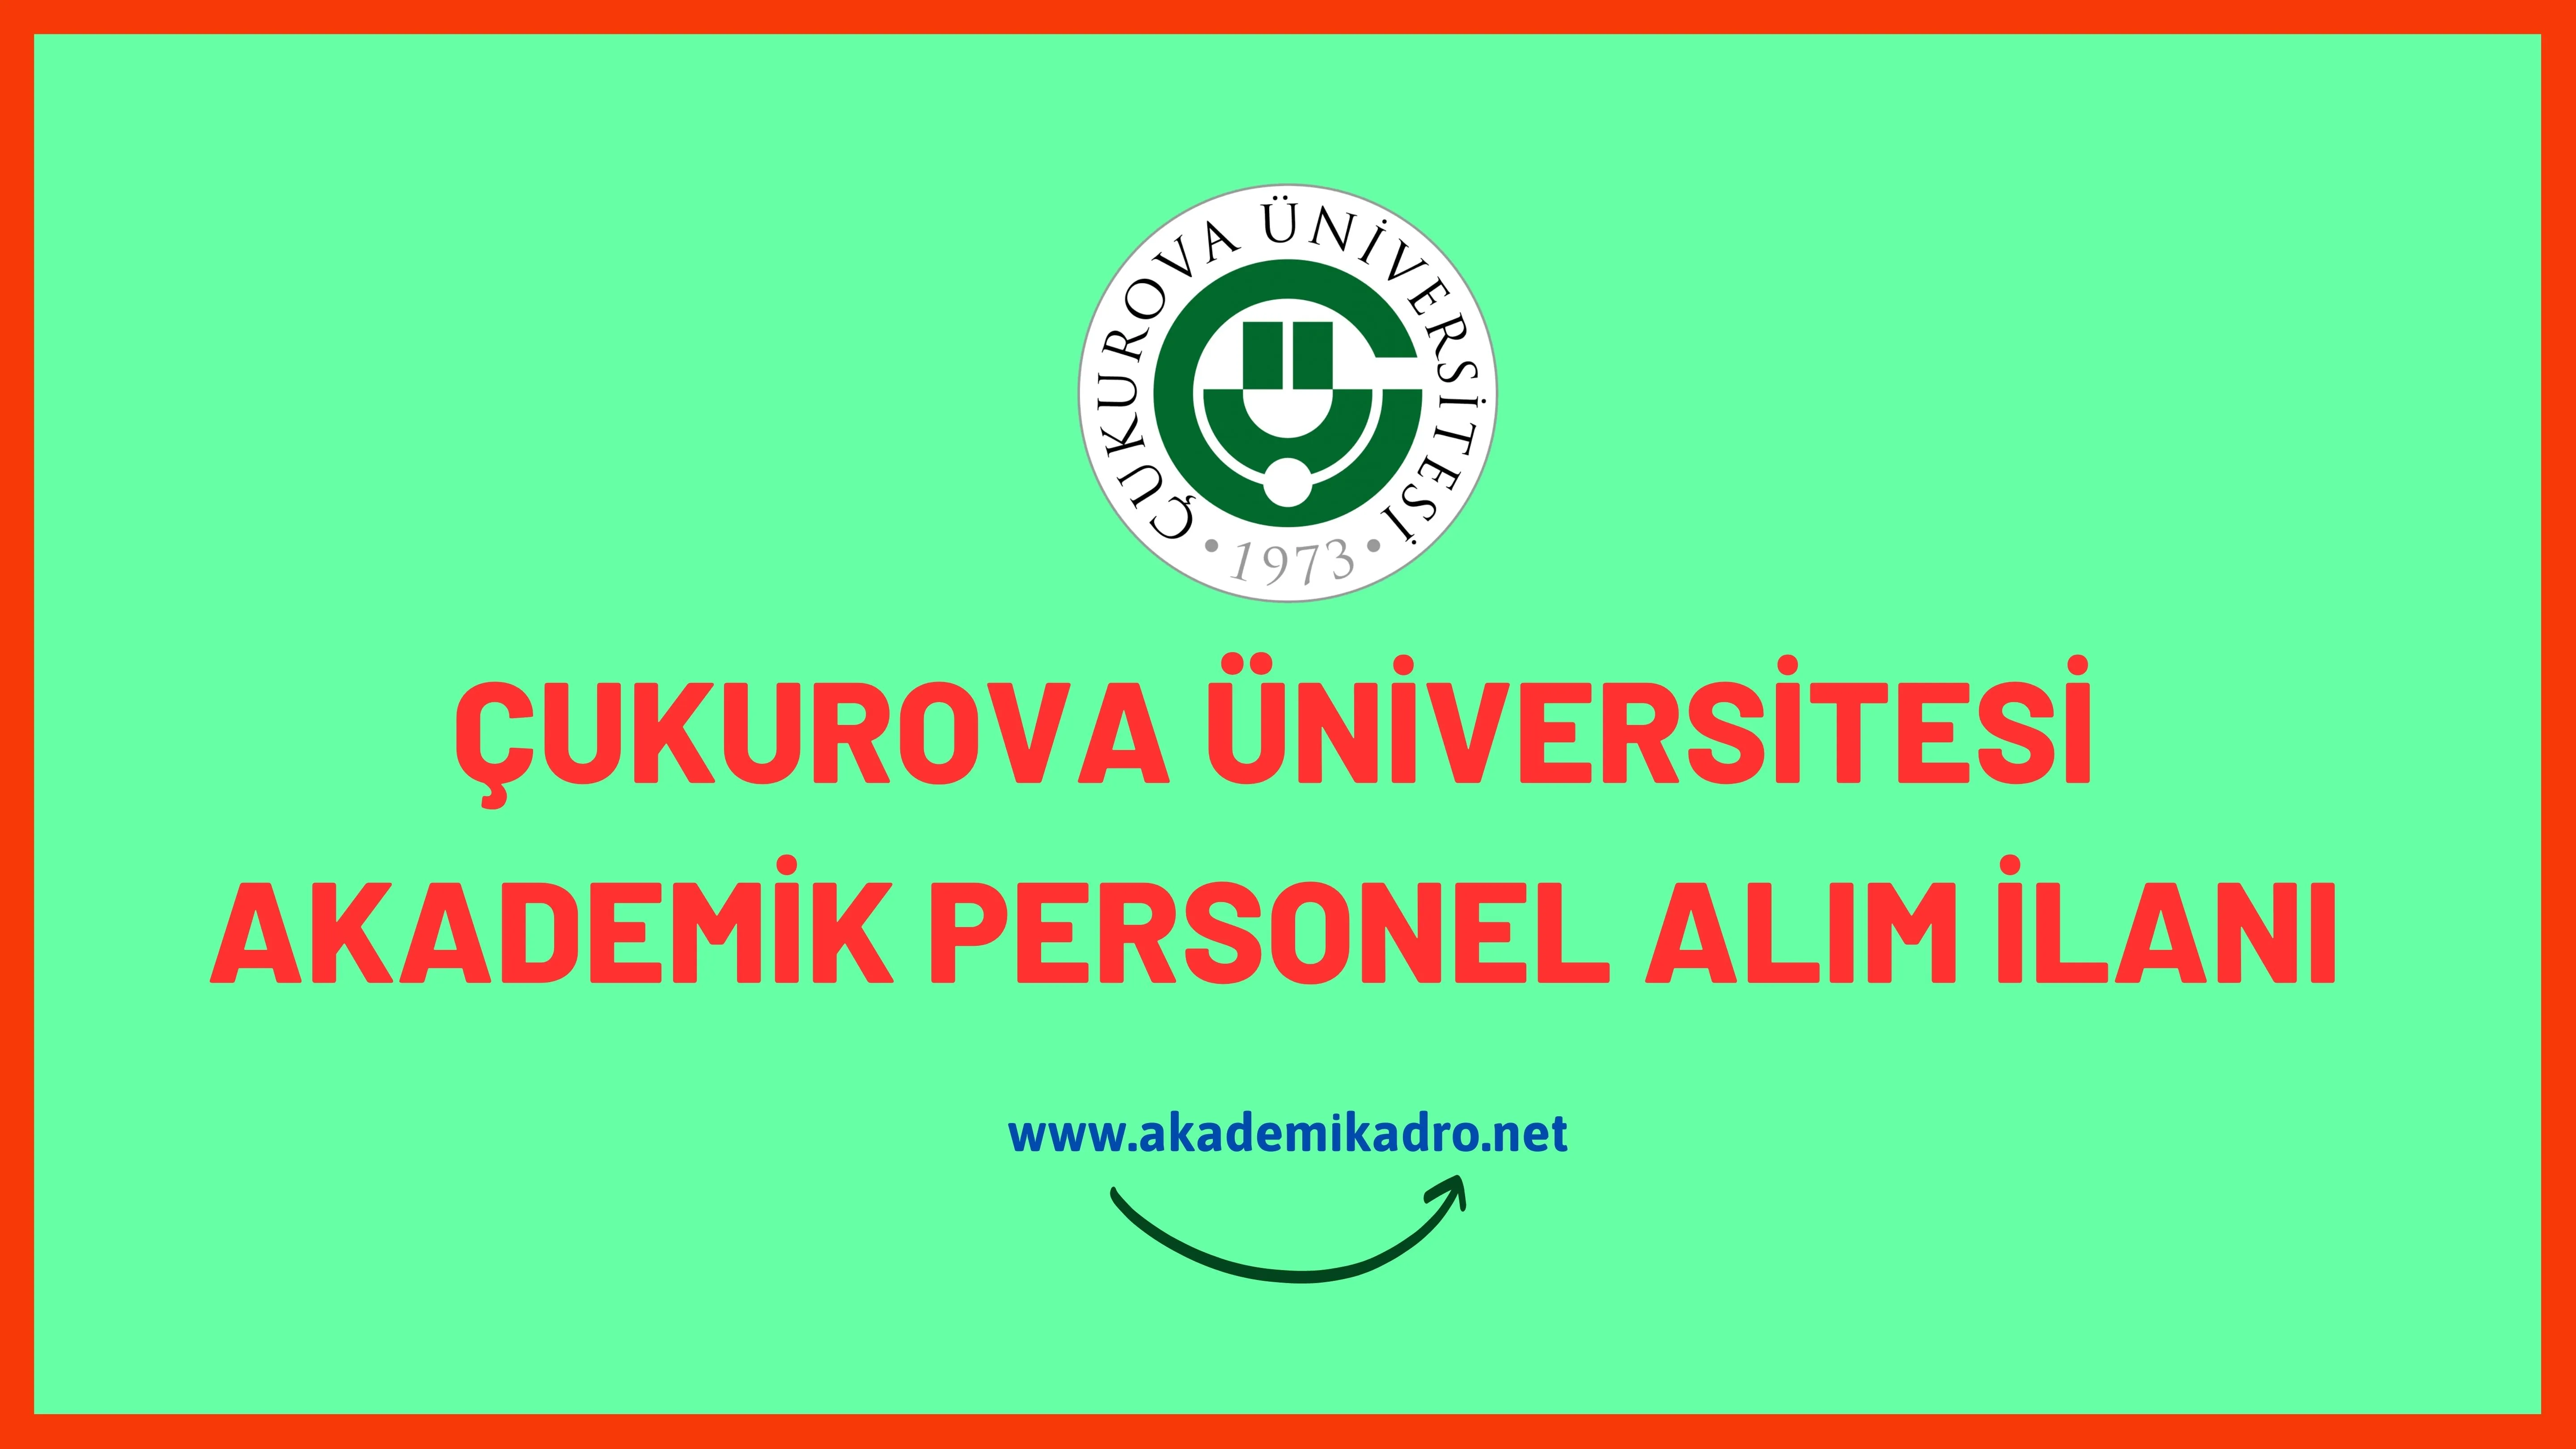 Çukurova Üniversitesi 45 öğretim üyesi alacaktır.